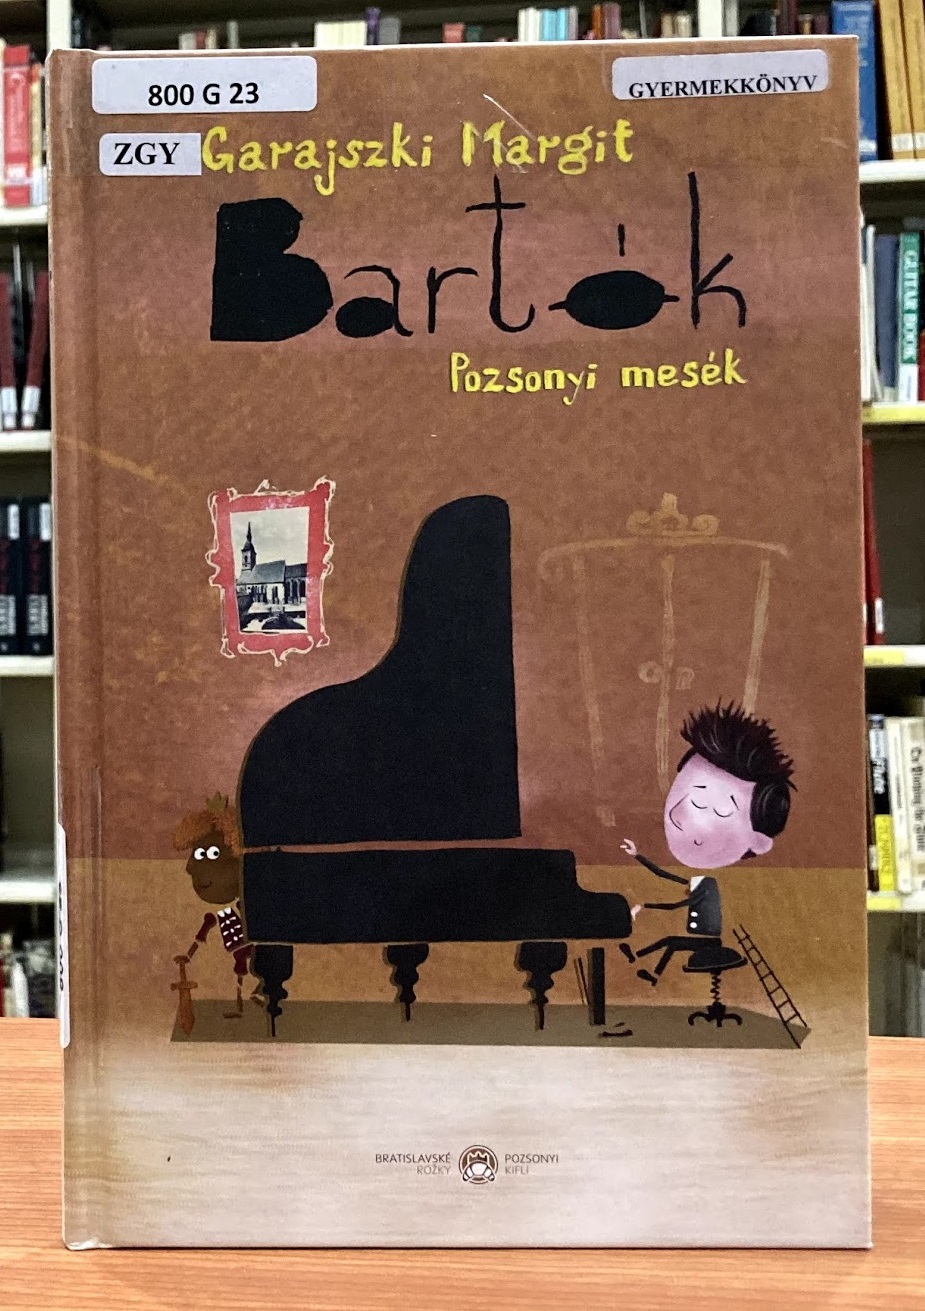 Garajszki Margit Bartók Pozsonyi mesék című könyv borítója